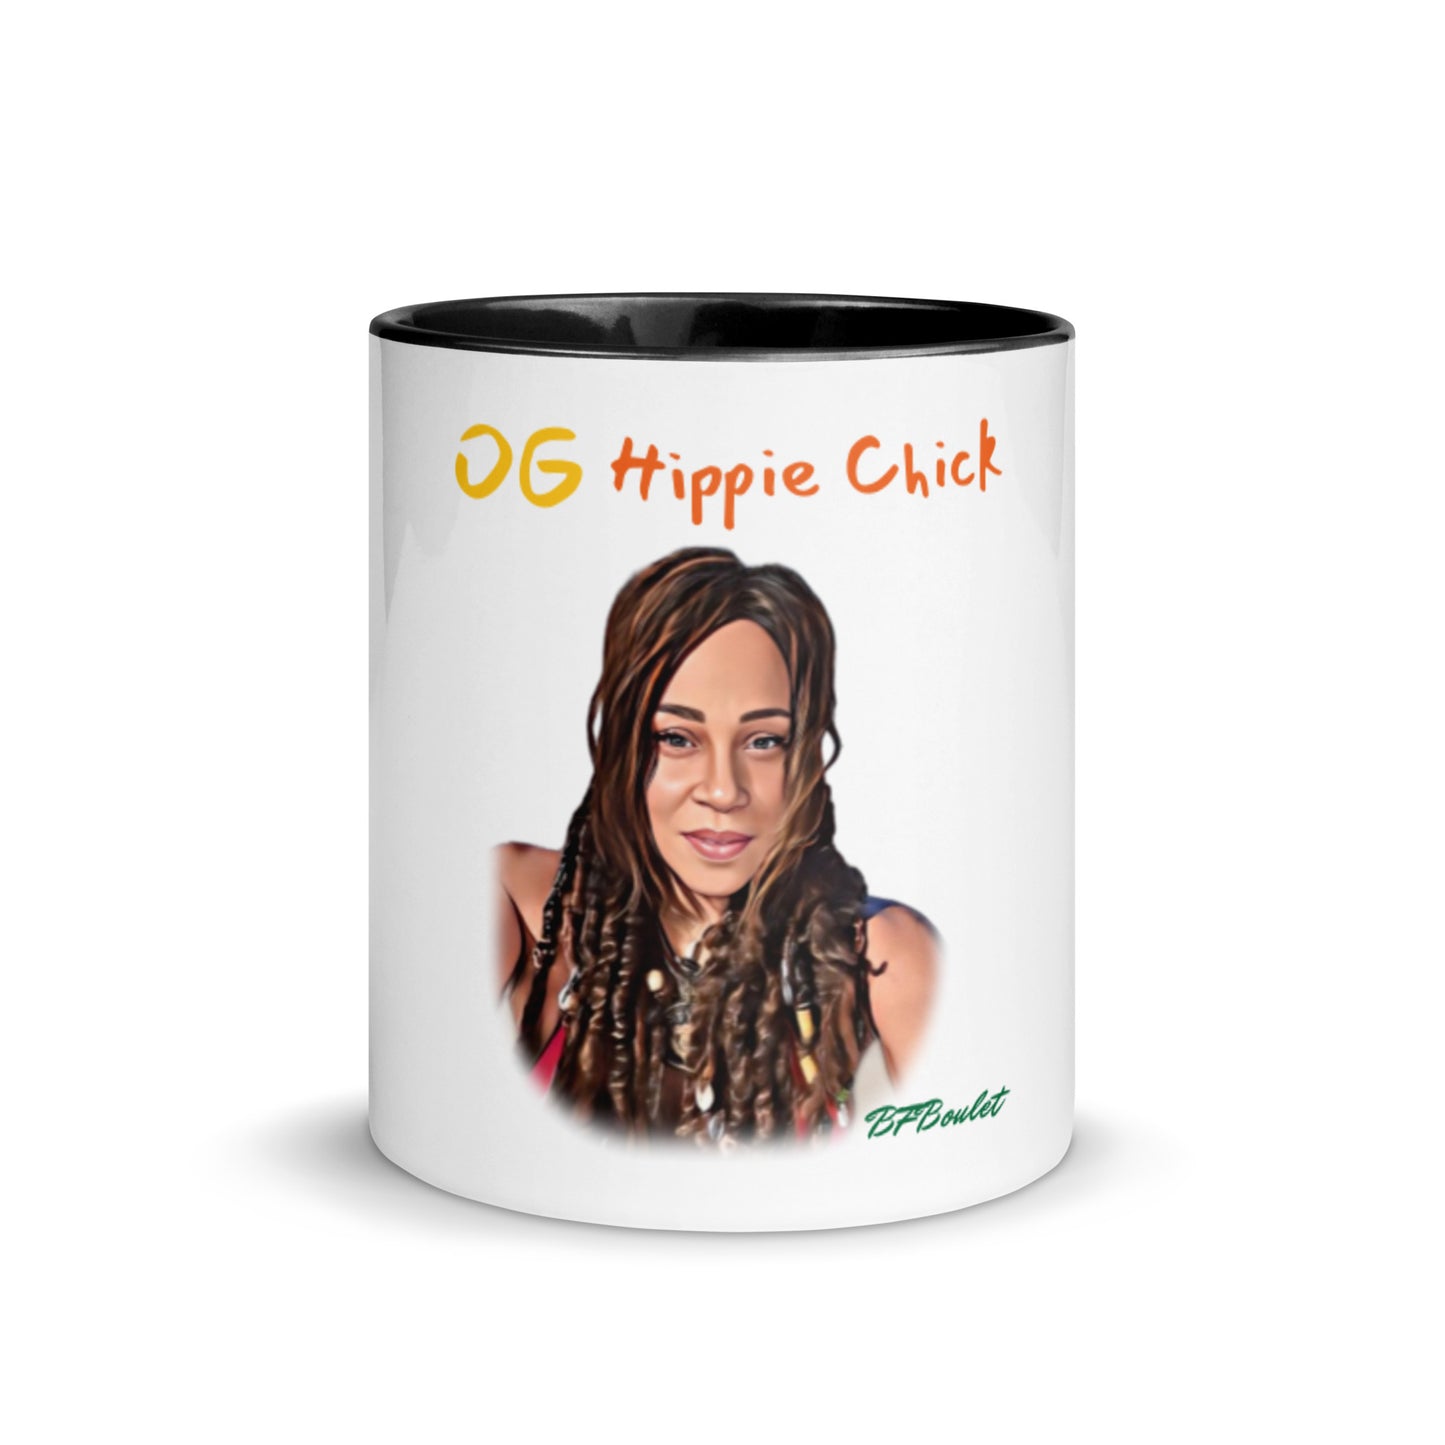 Mug Couleur Blanche - OG Hippie Chick (BFBoulet)